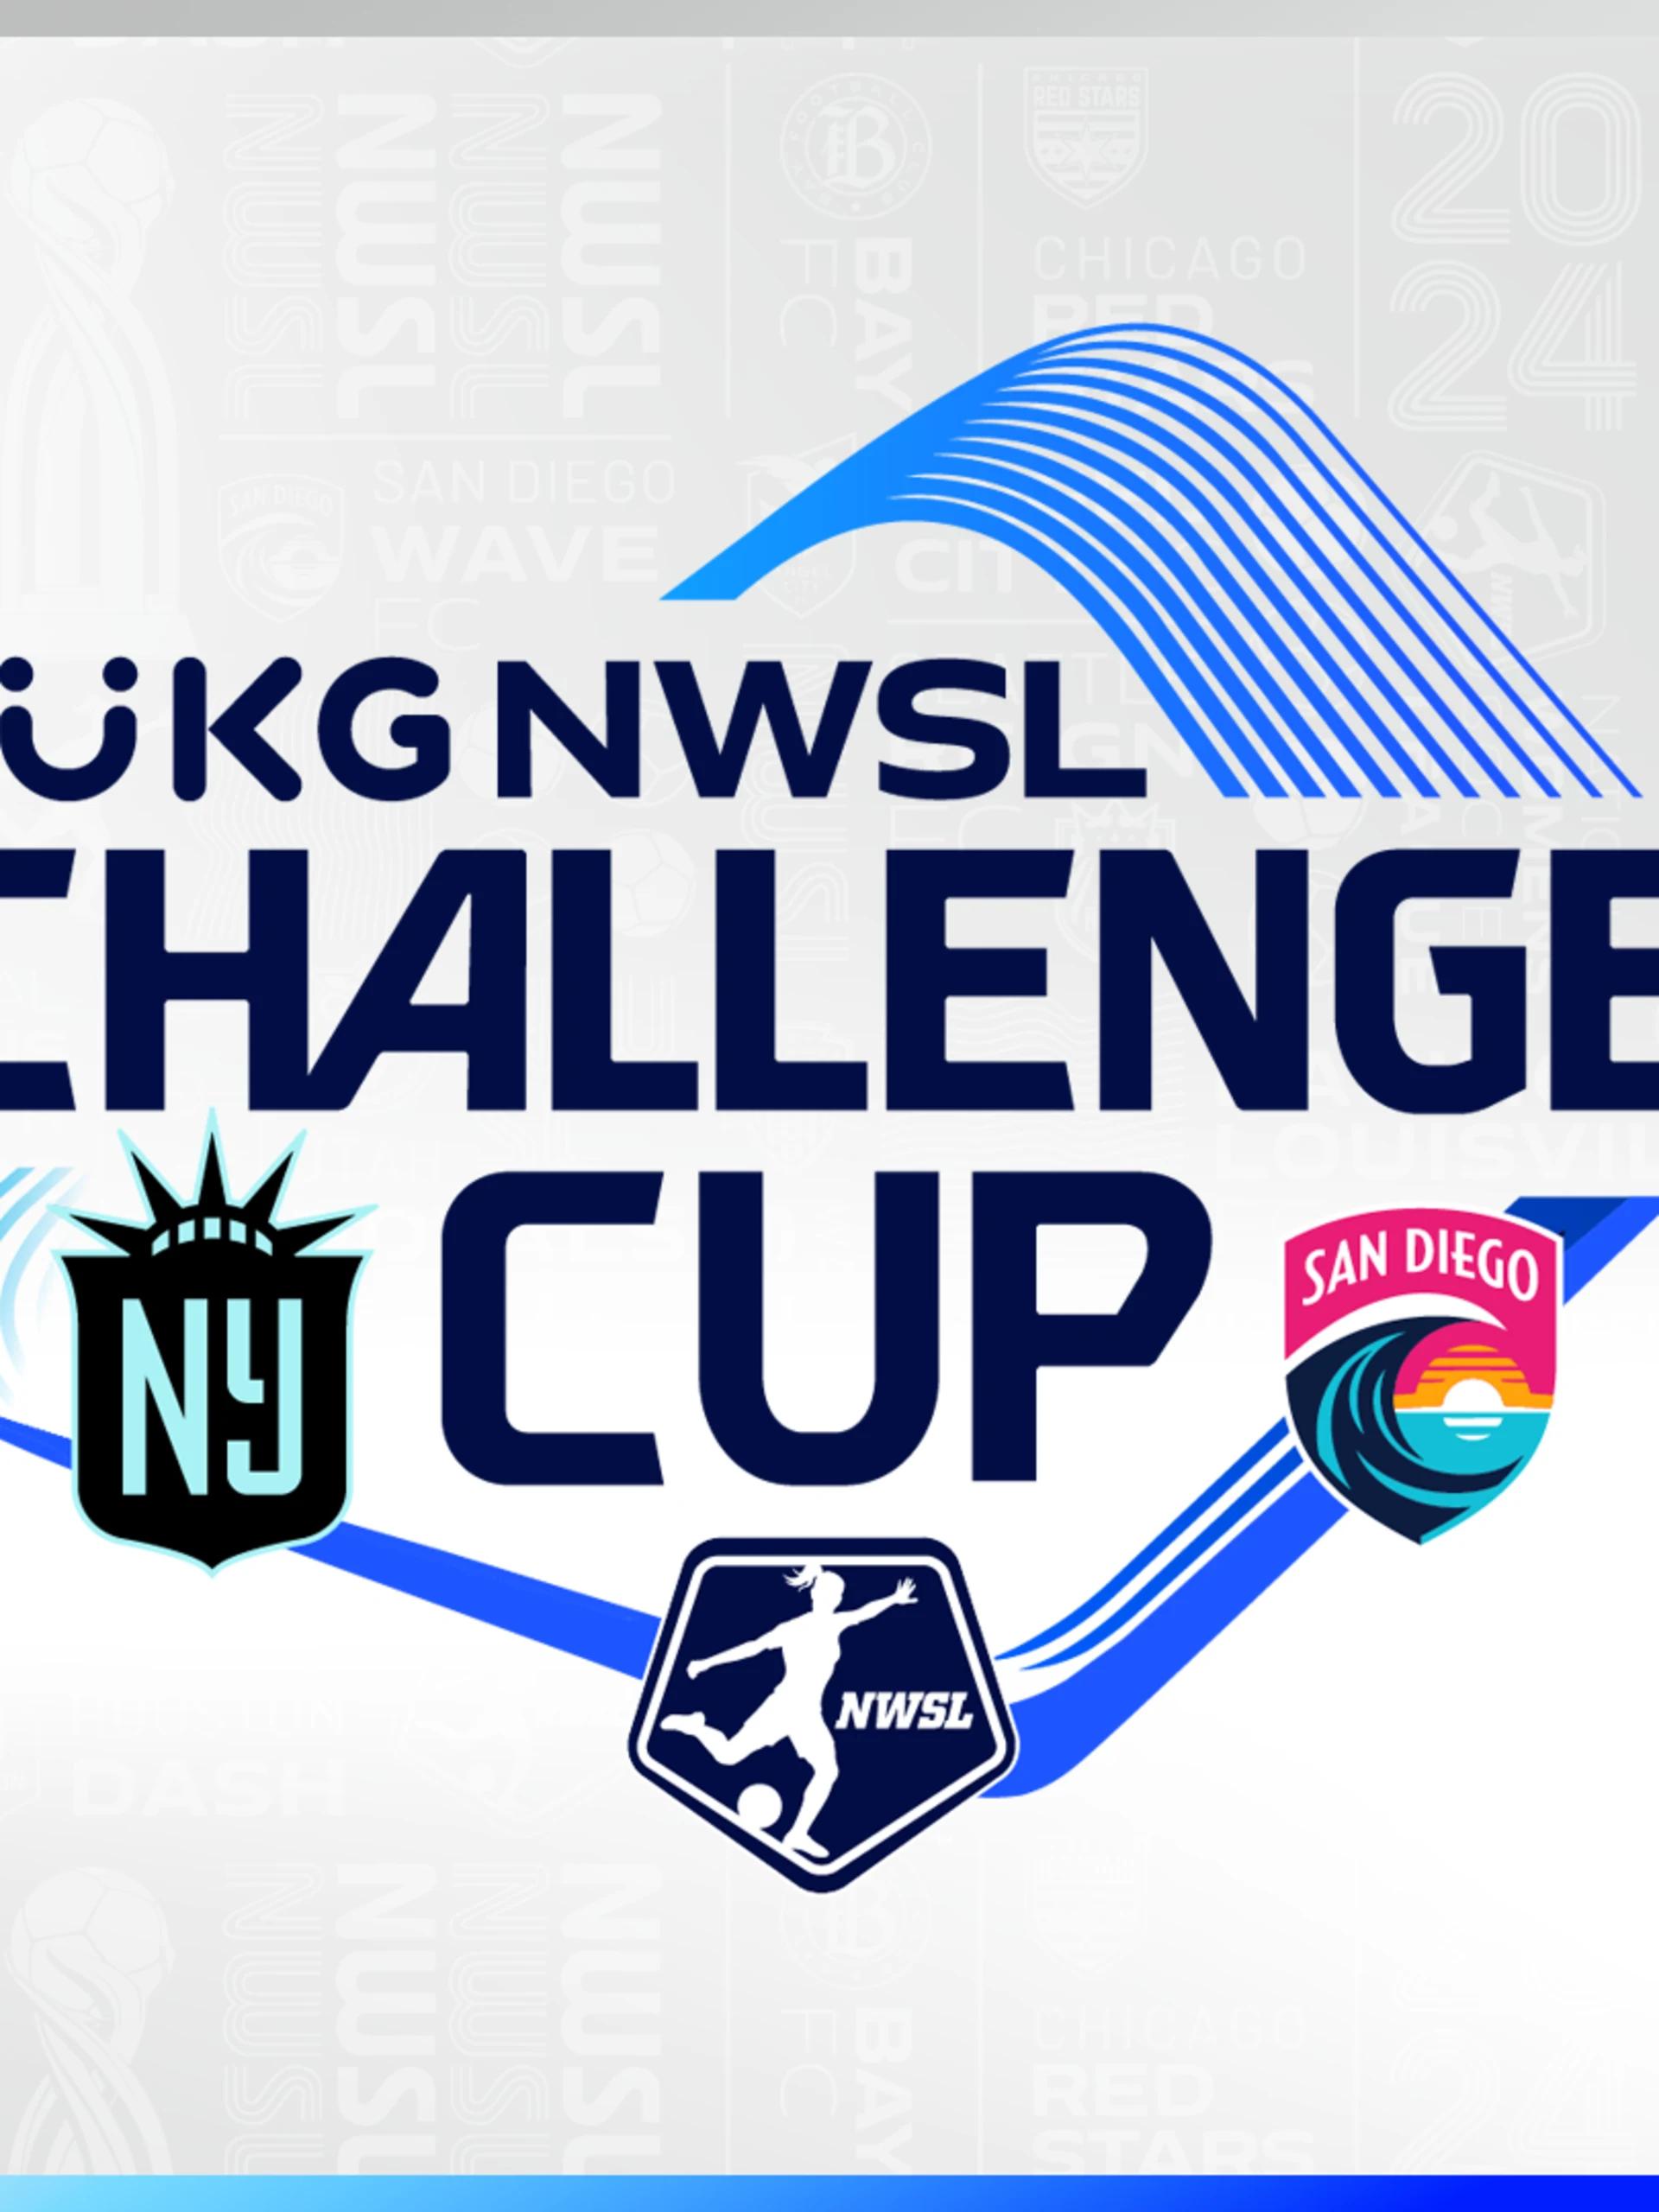 ukg-challenge-cup-1920x1080